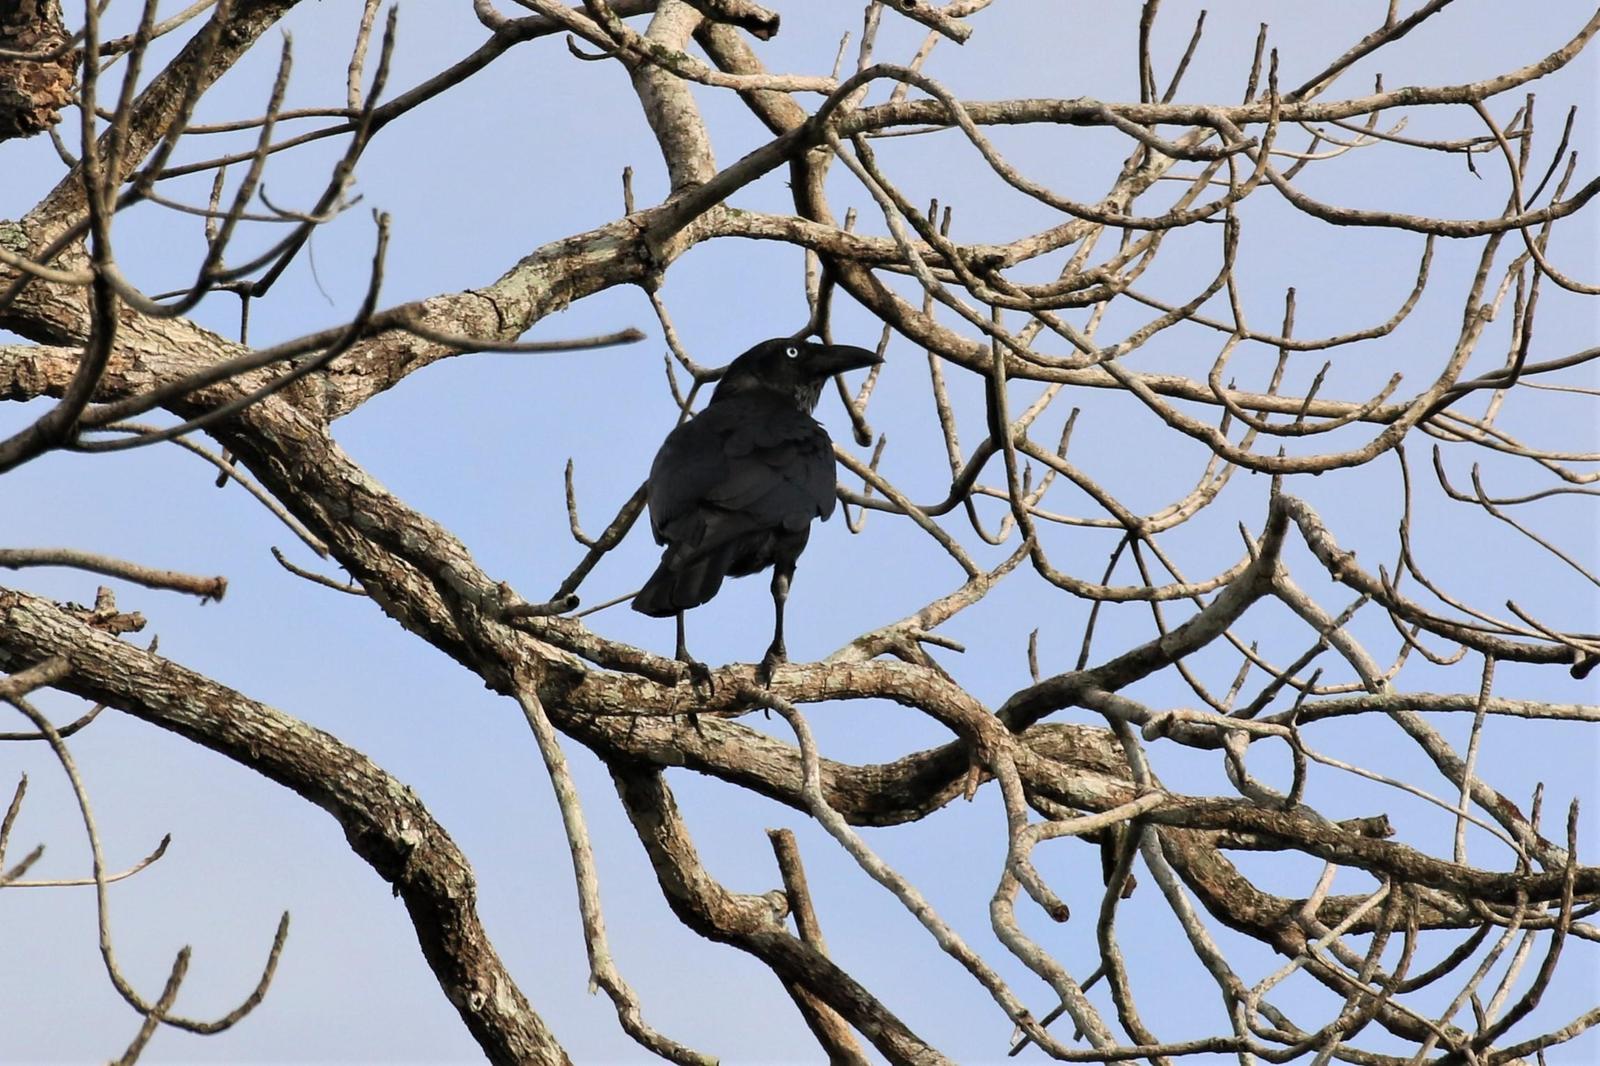 Torresian Crow Photo by Richard Jeffers